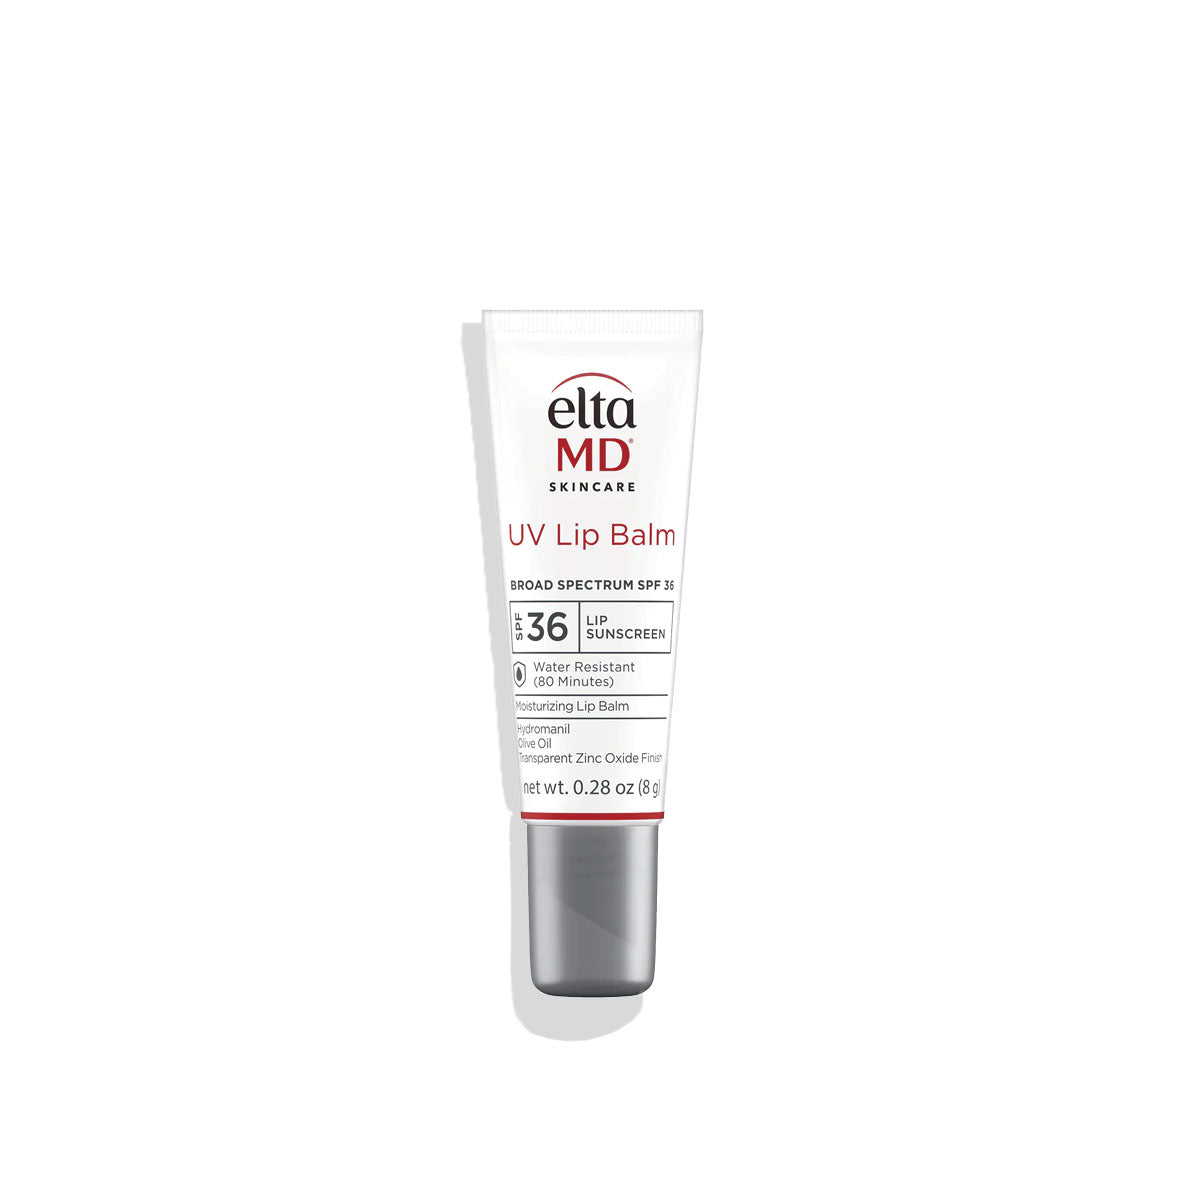 EltaMD UV Lip Balm SPF 36 lip sunscreen